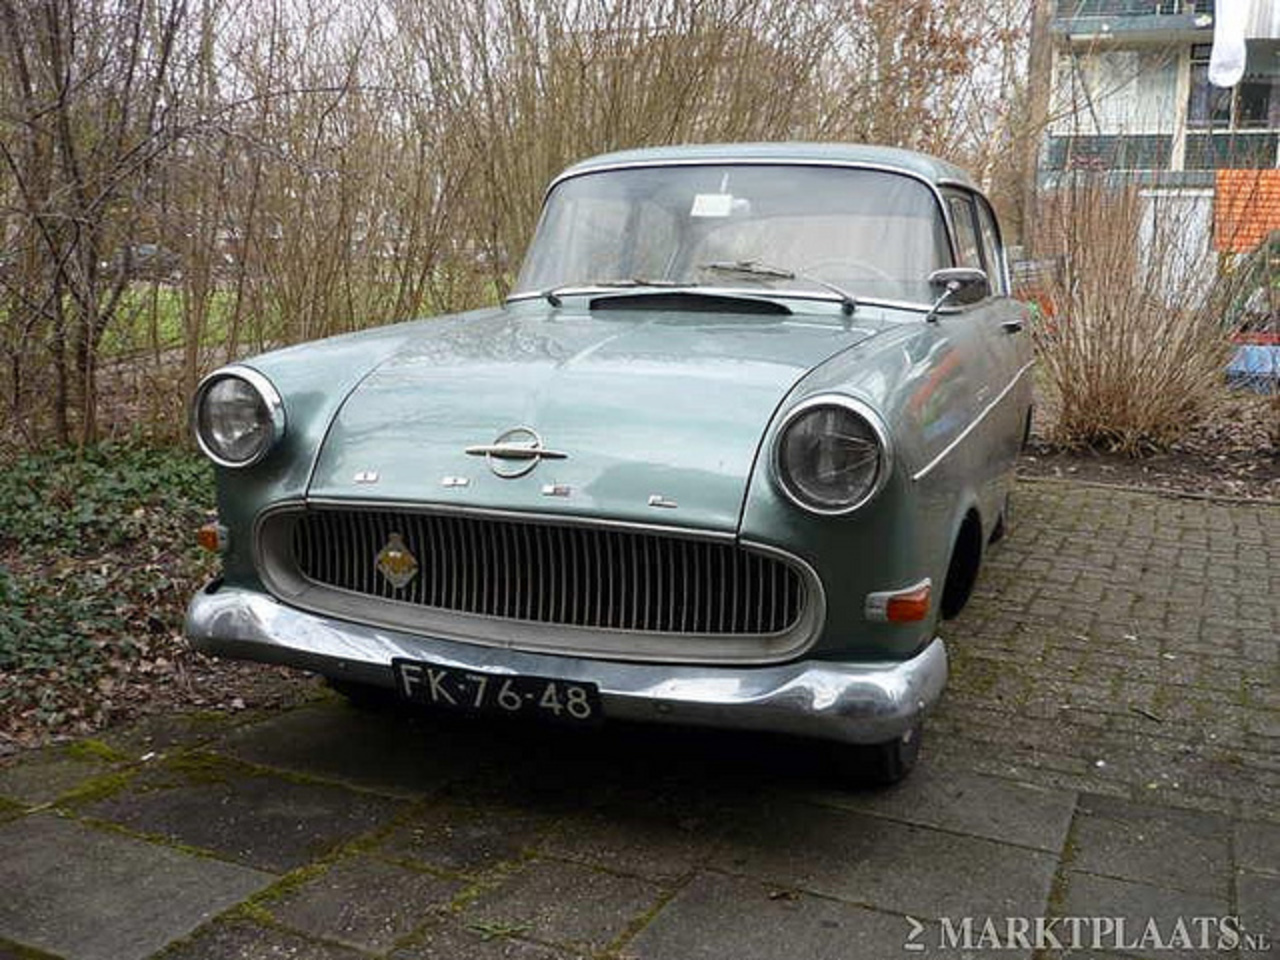 1961 Opel Rekord P1 (FK-76-48) | Flickr - Photo Sharing!